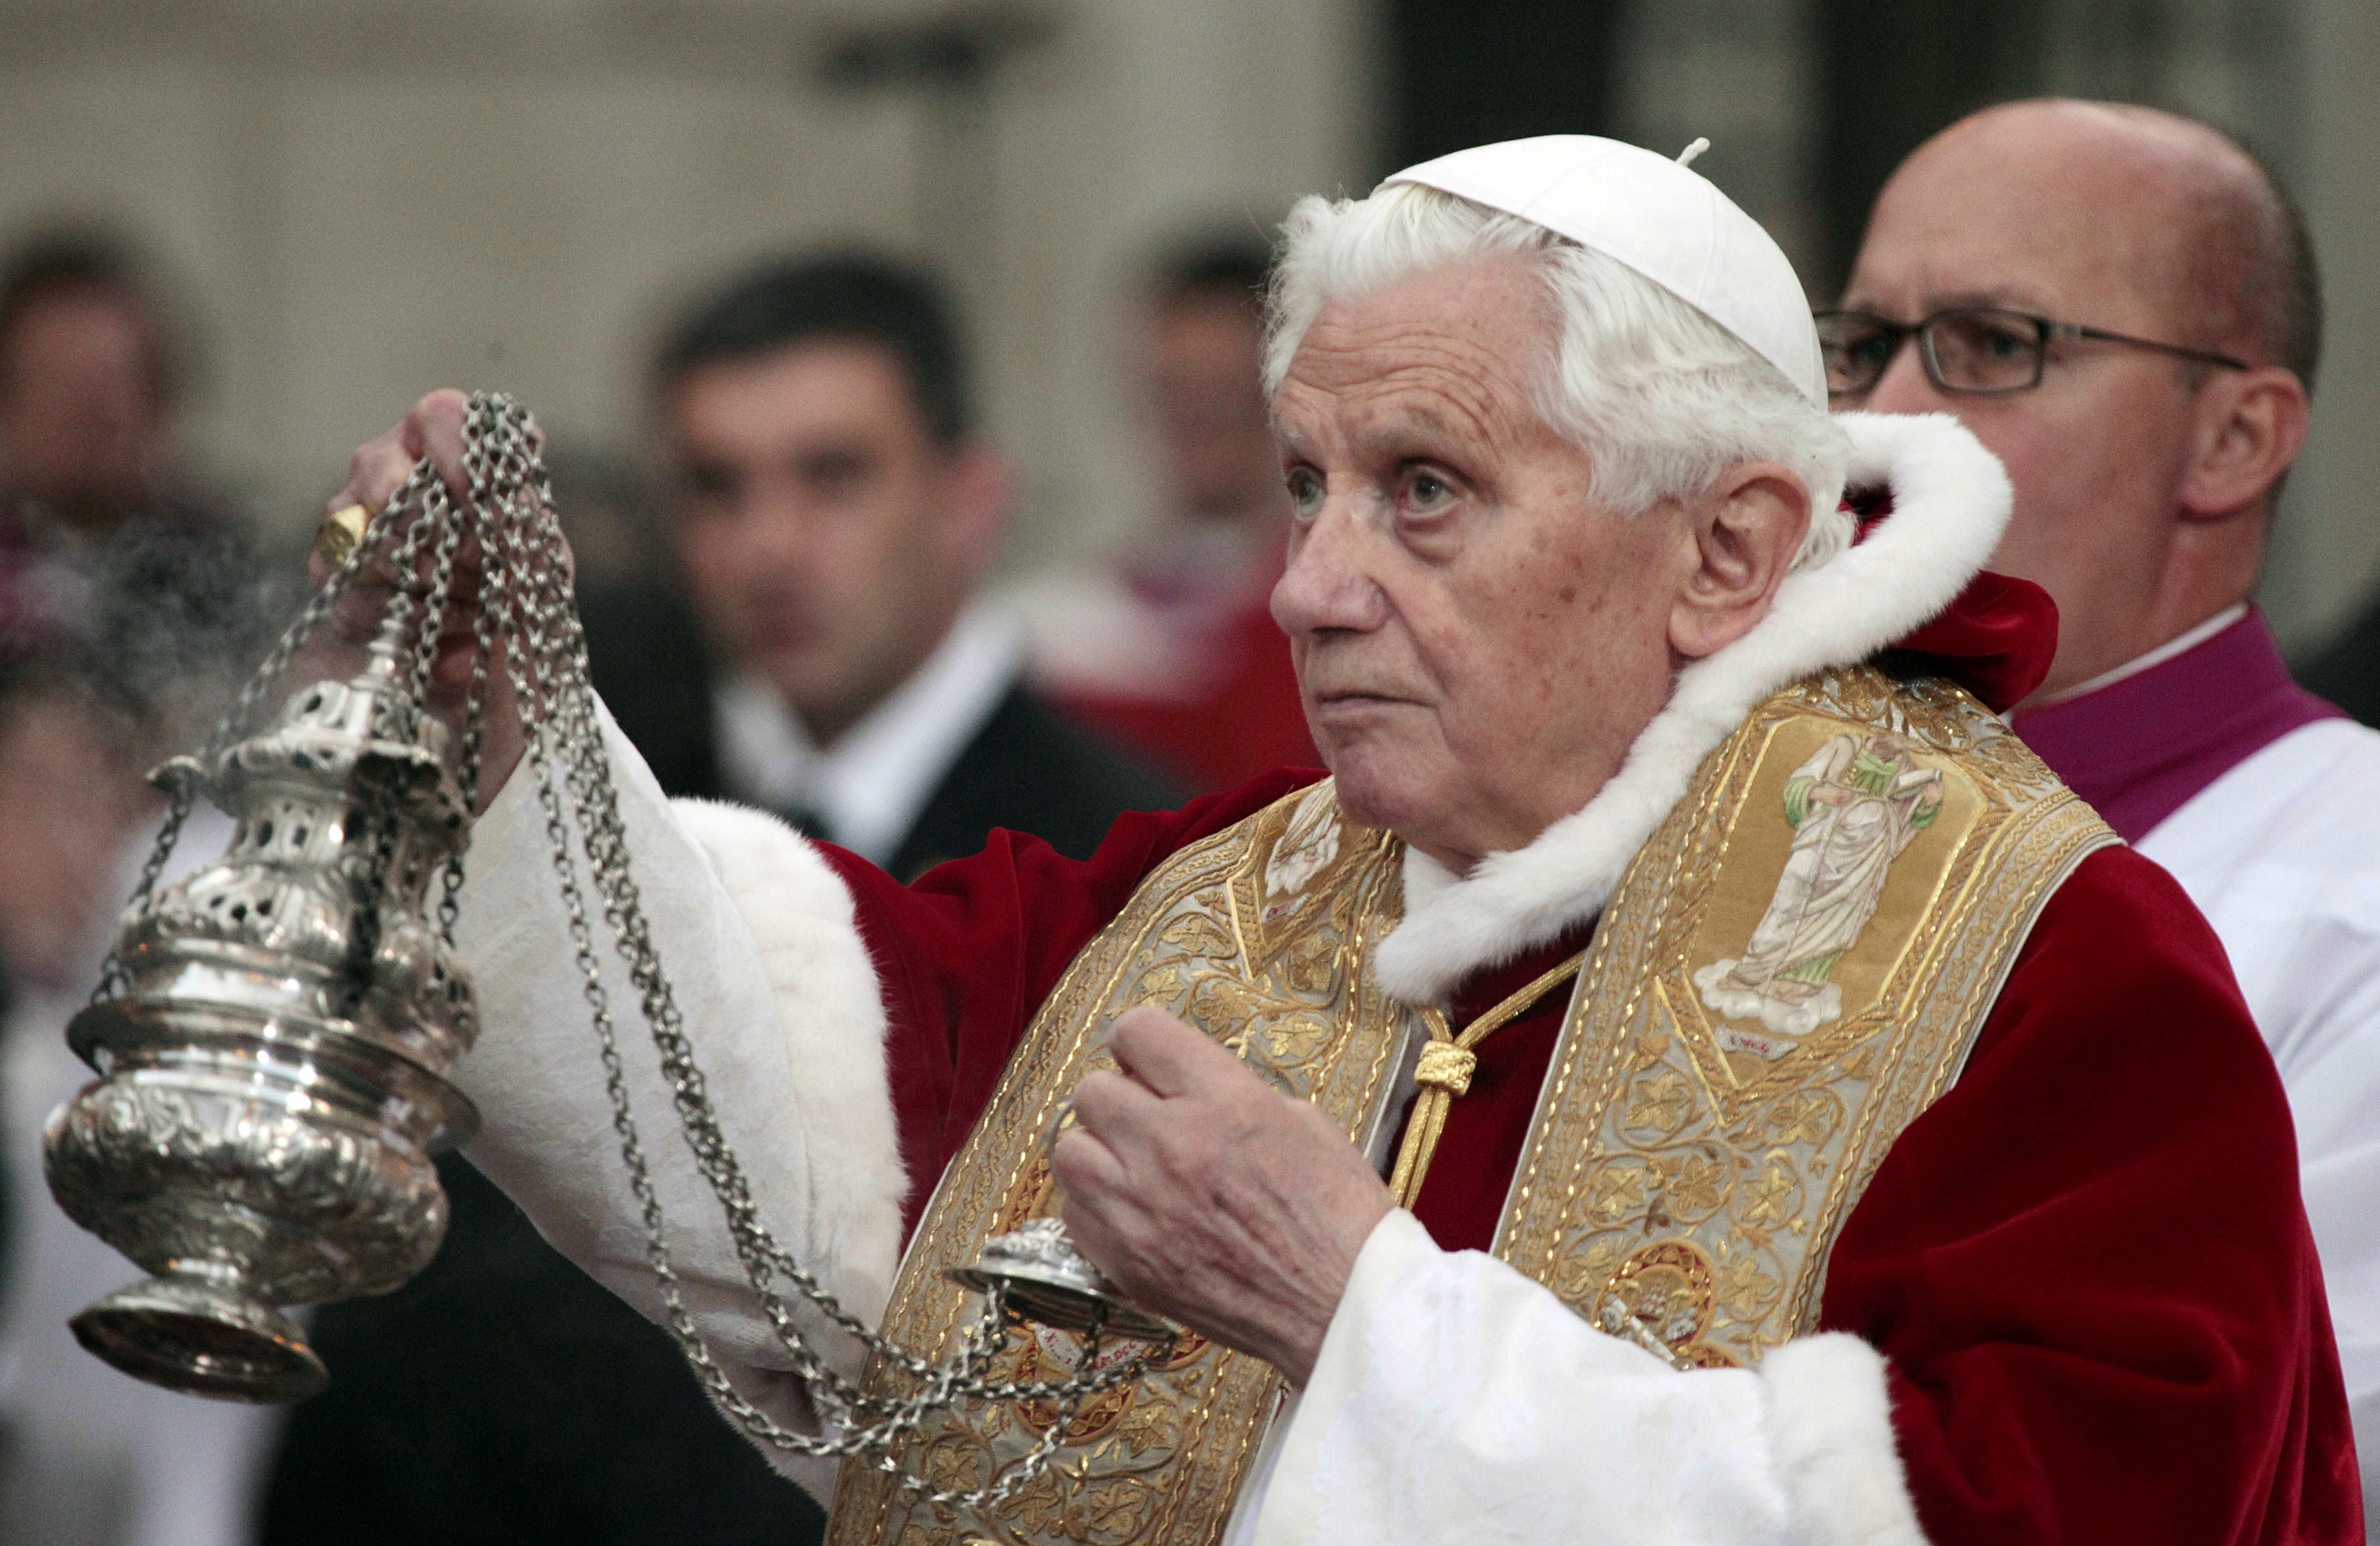 Ξεκινούν οι τρίμηνες διακοπές του Πάπα Βενέδικτου